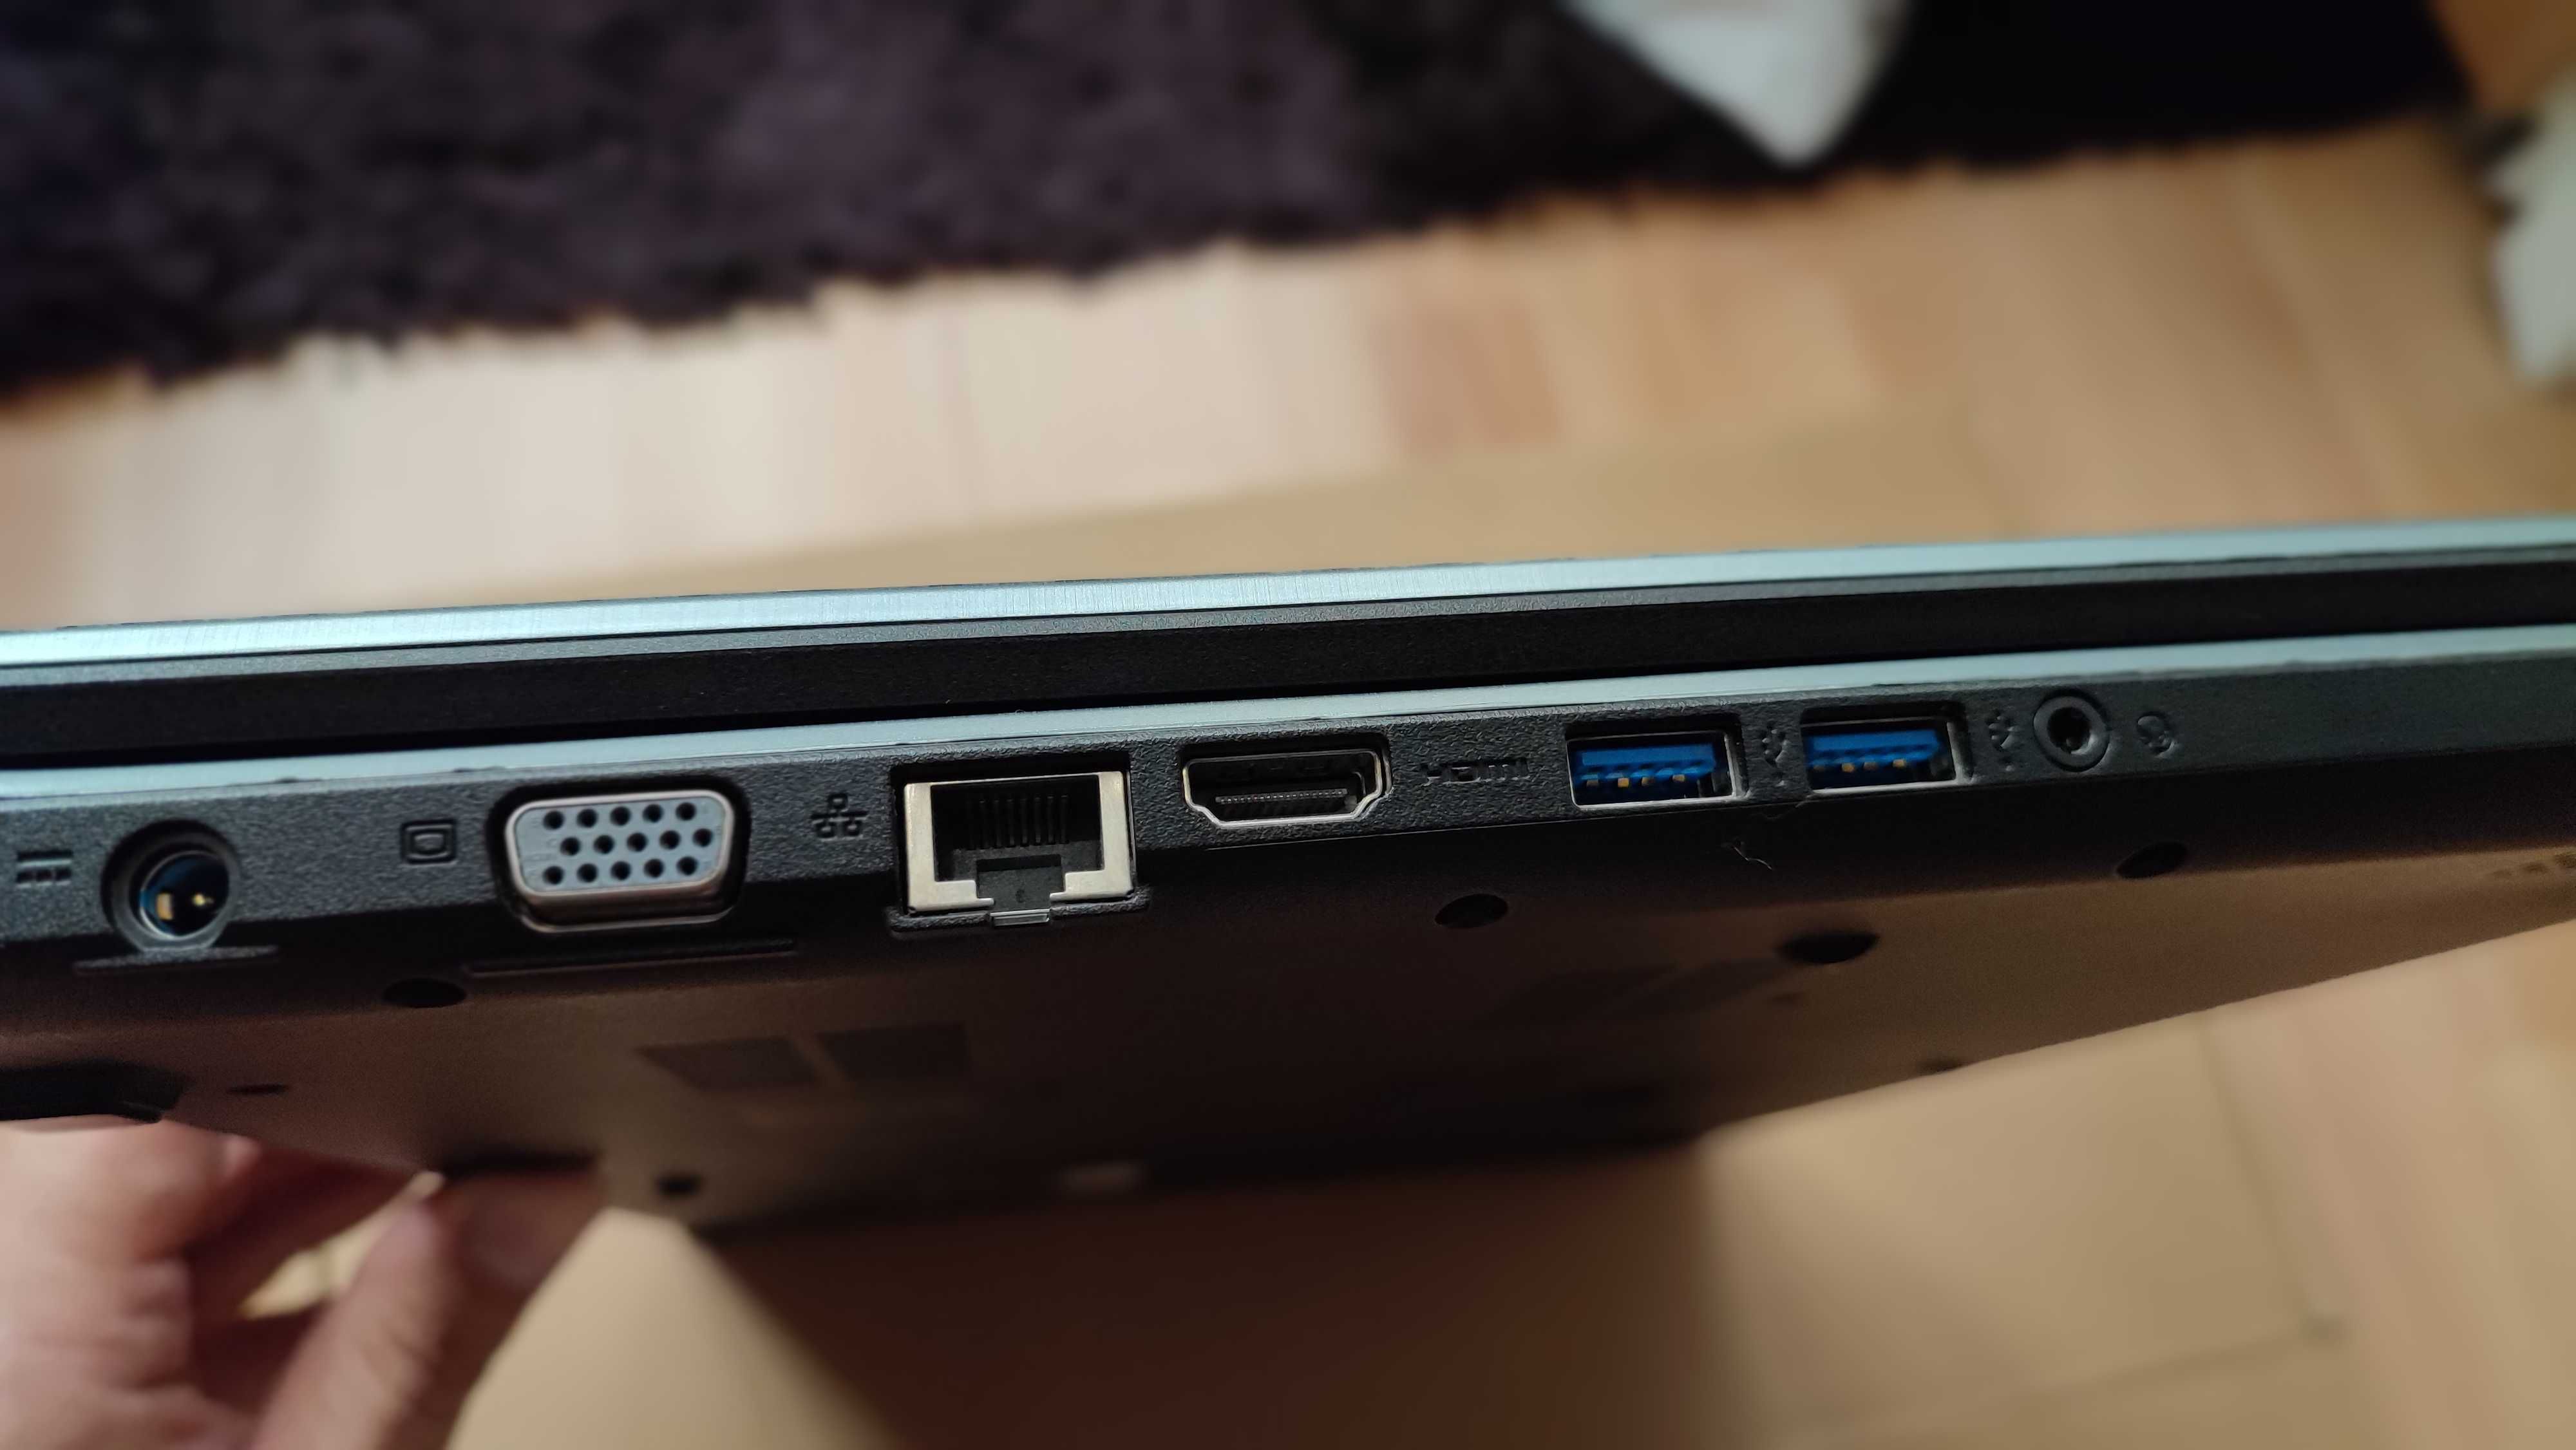 Laptop de business Acer Aspire E5-771G – diagonala 17,3 inch